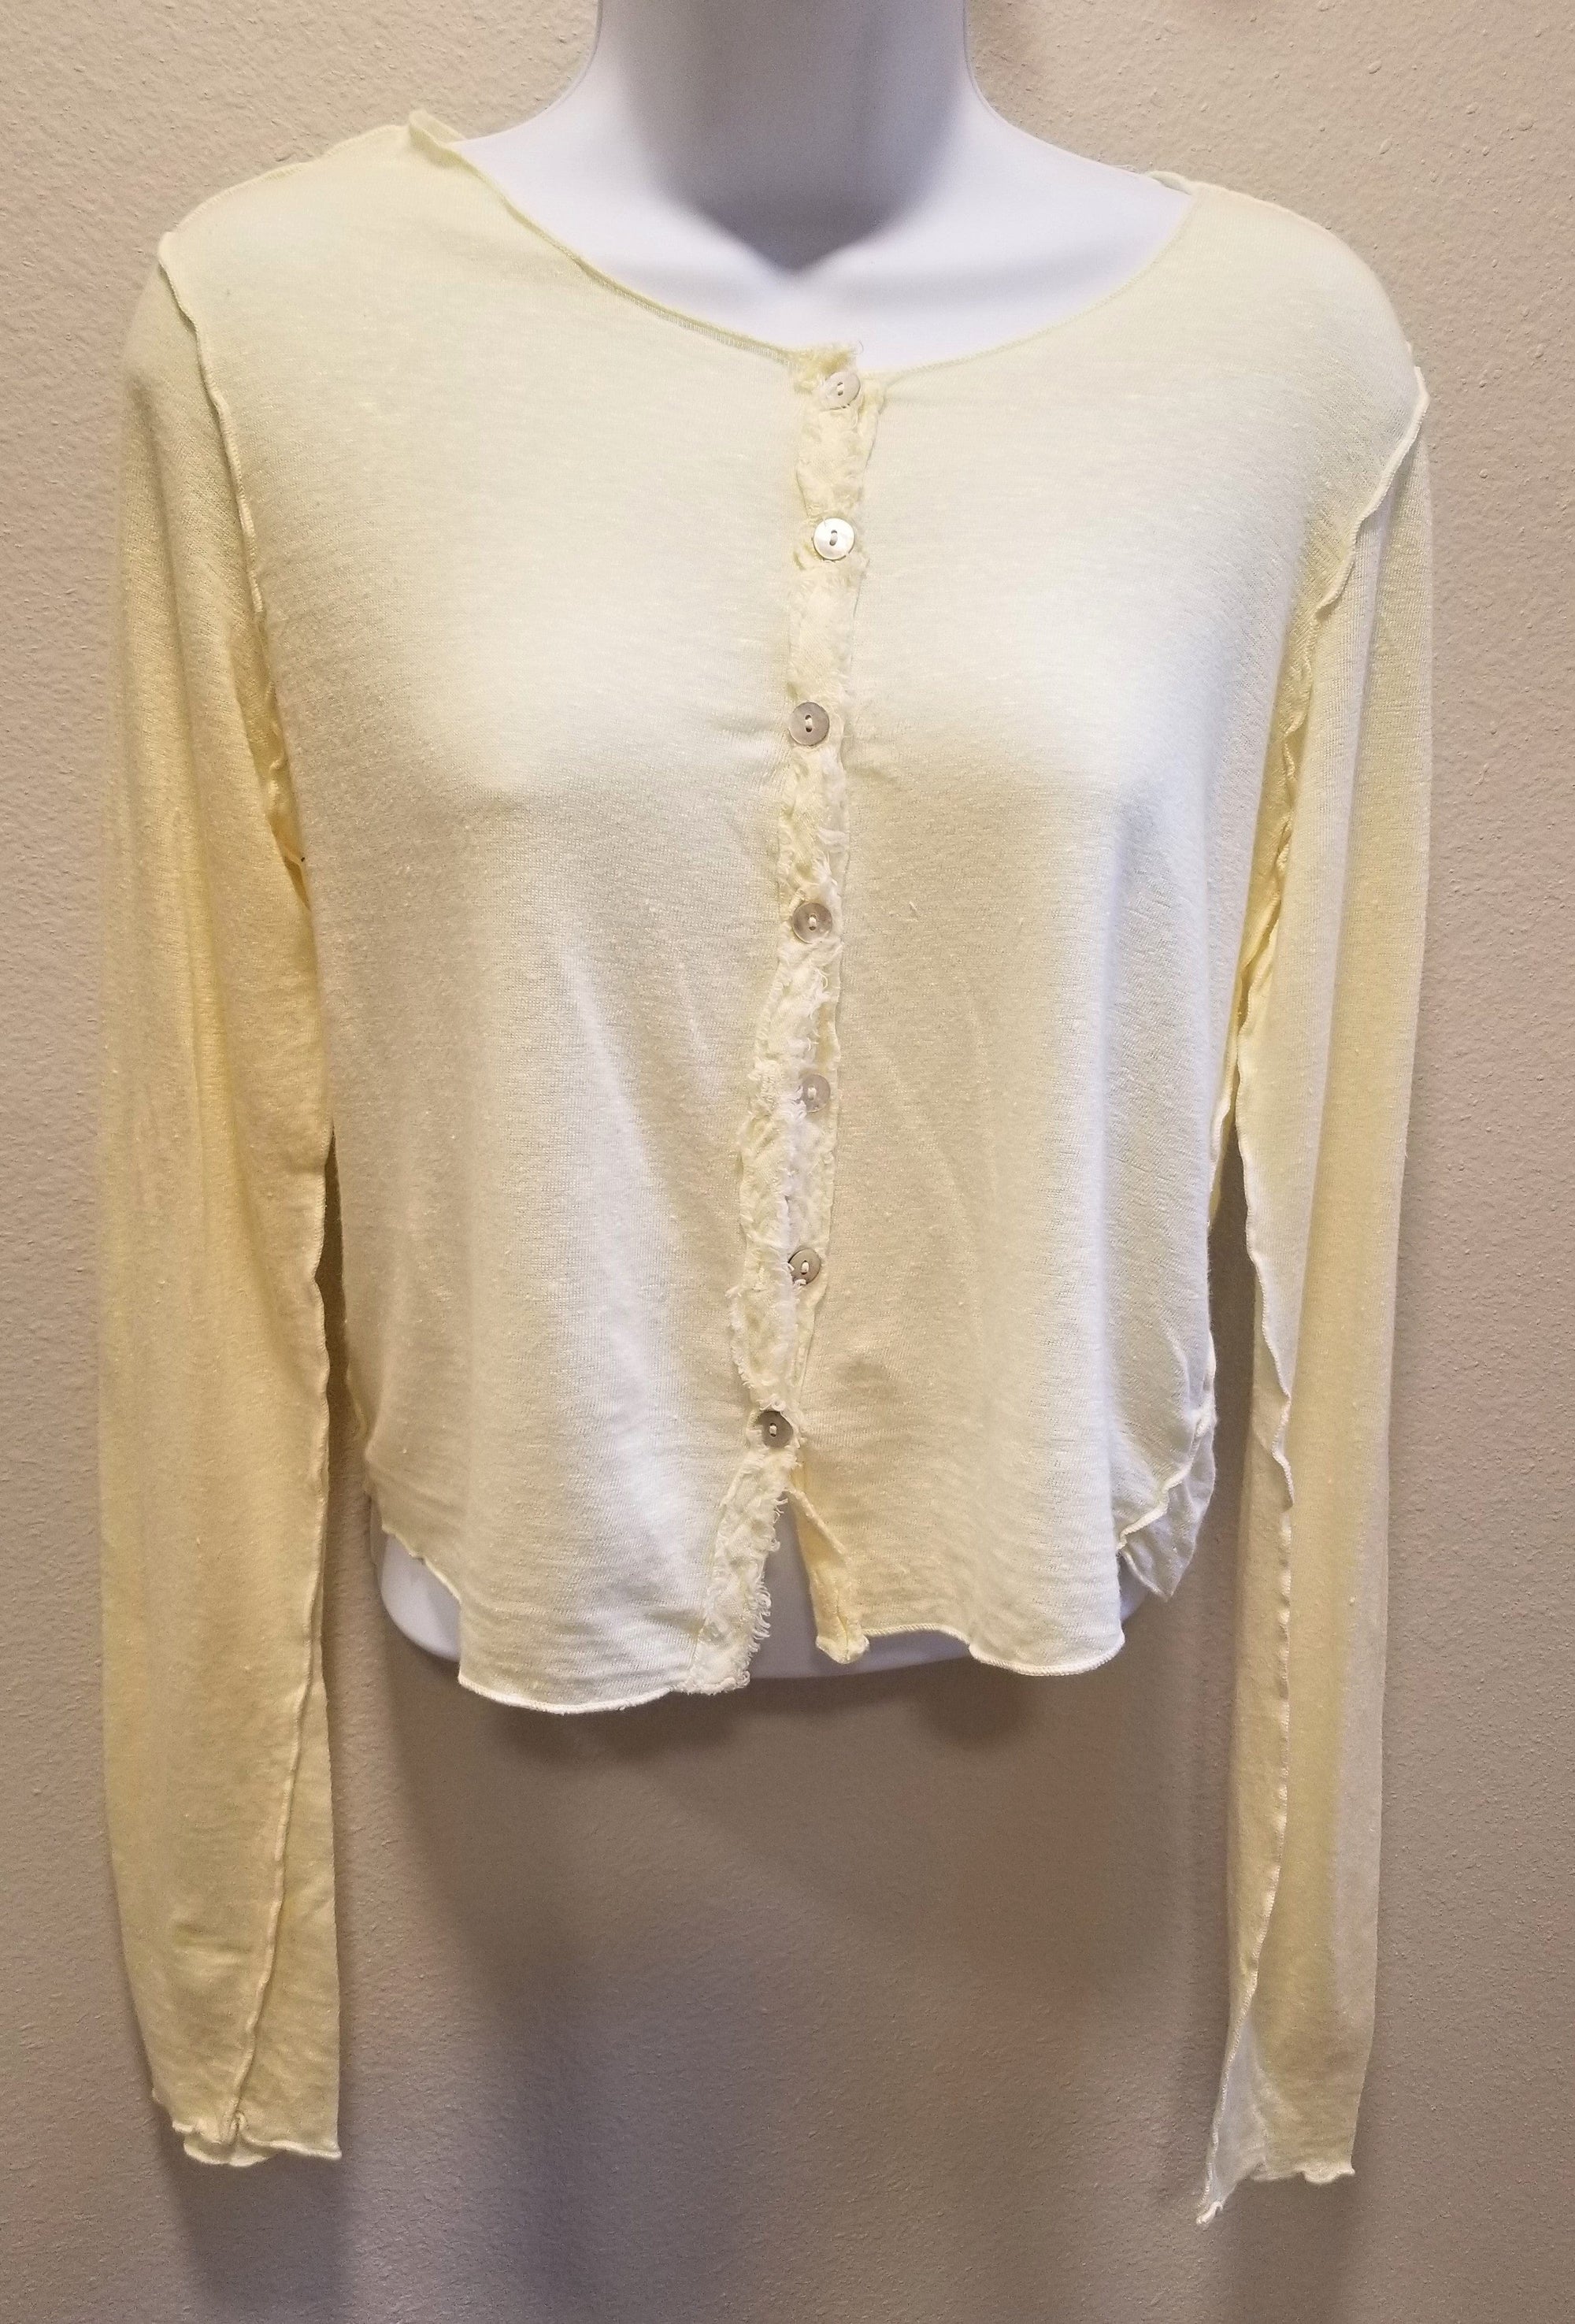 Cutloose Women's Sweater Lemonade / S Lightweight Linen Crop Cardigan - Button Down